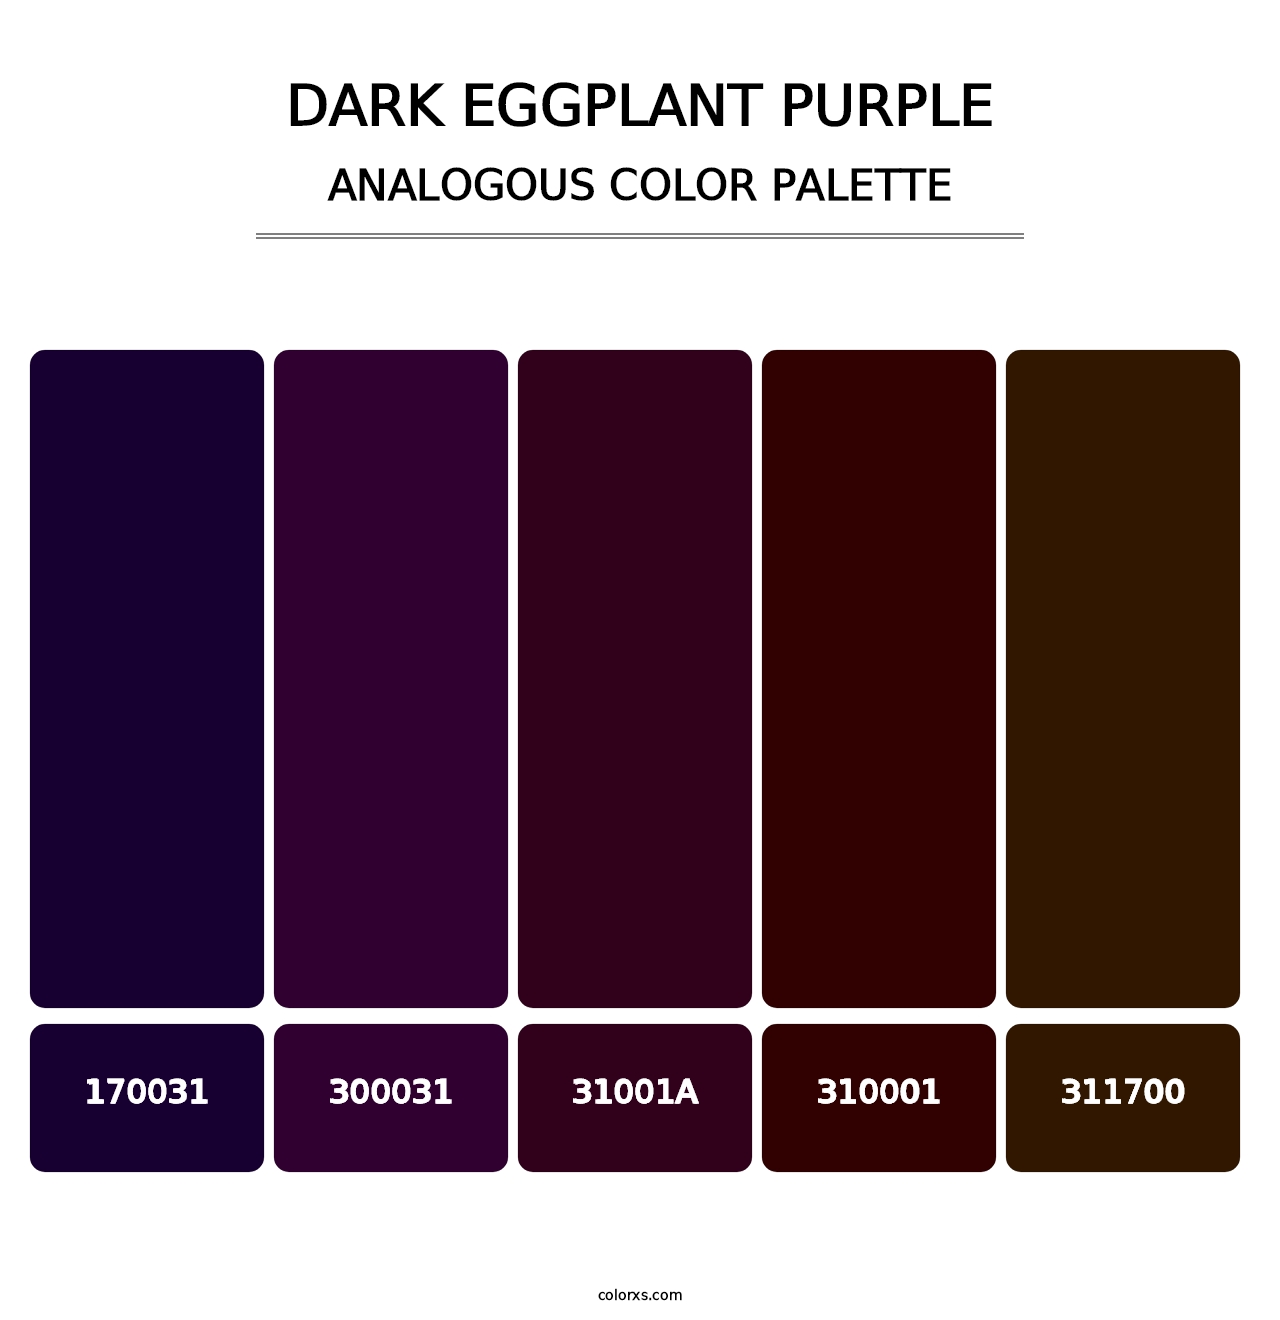 Dark Eggplant Purple - Analogous Color Palette